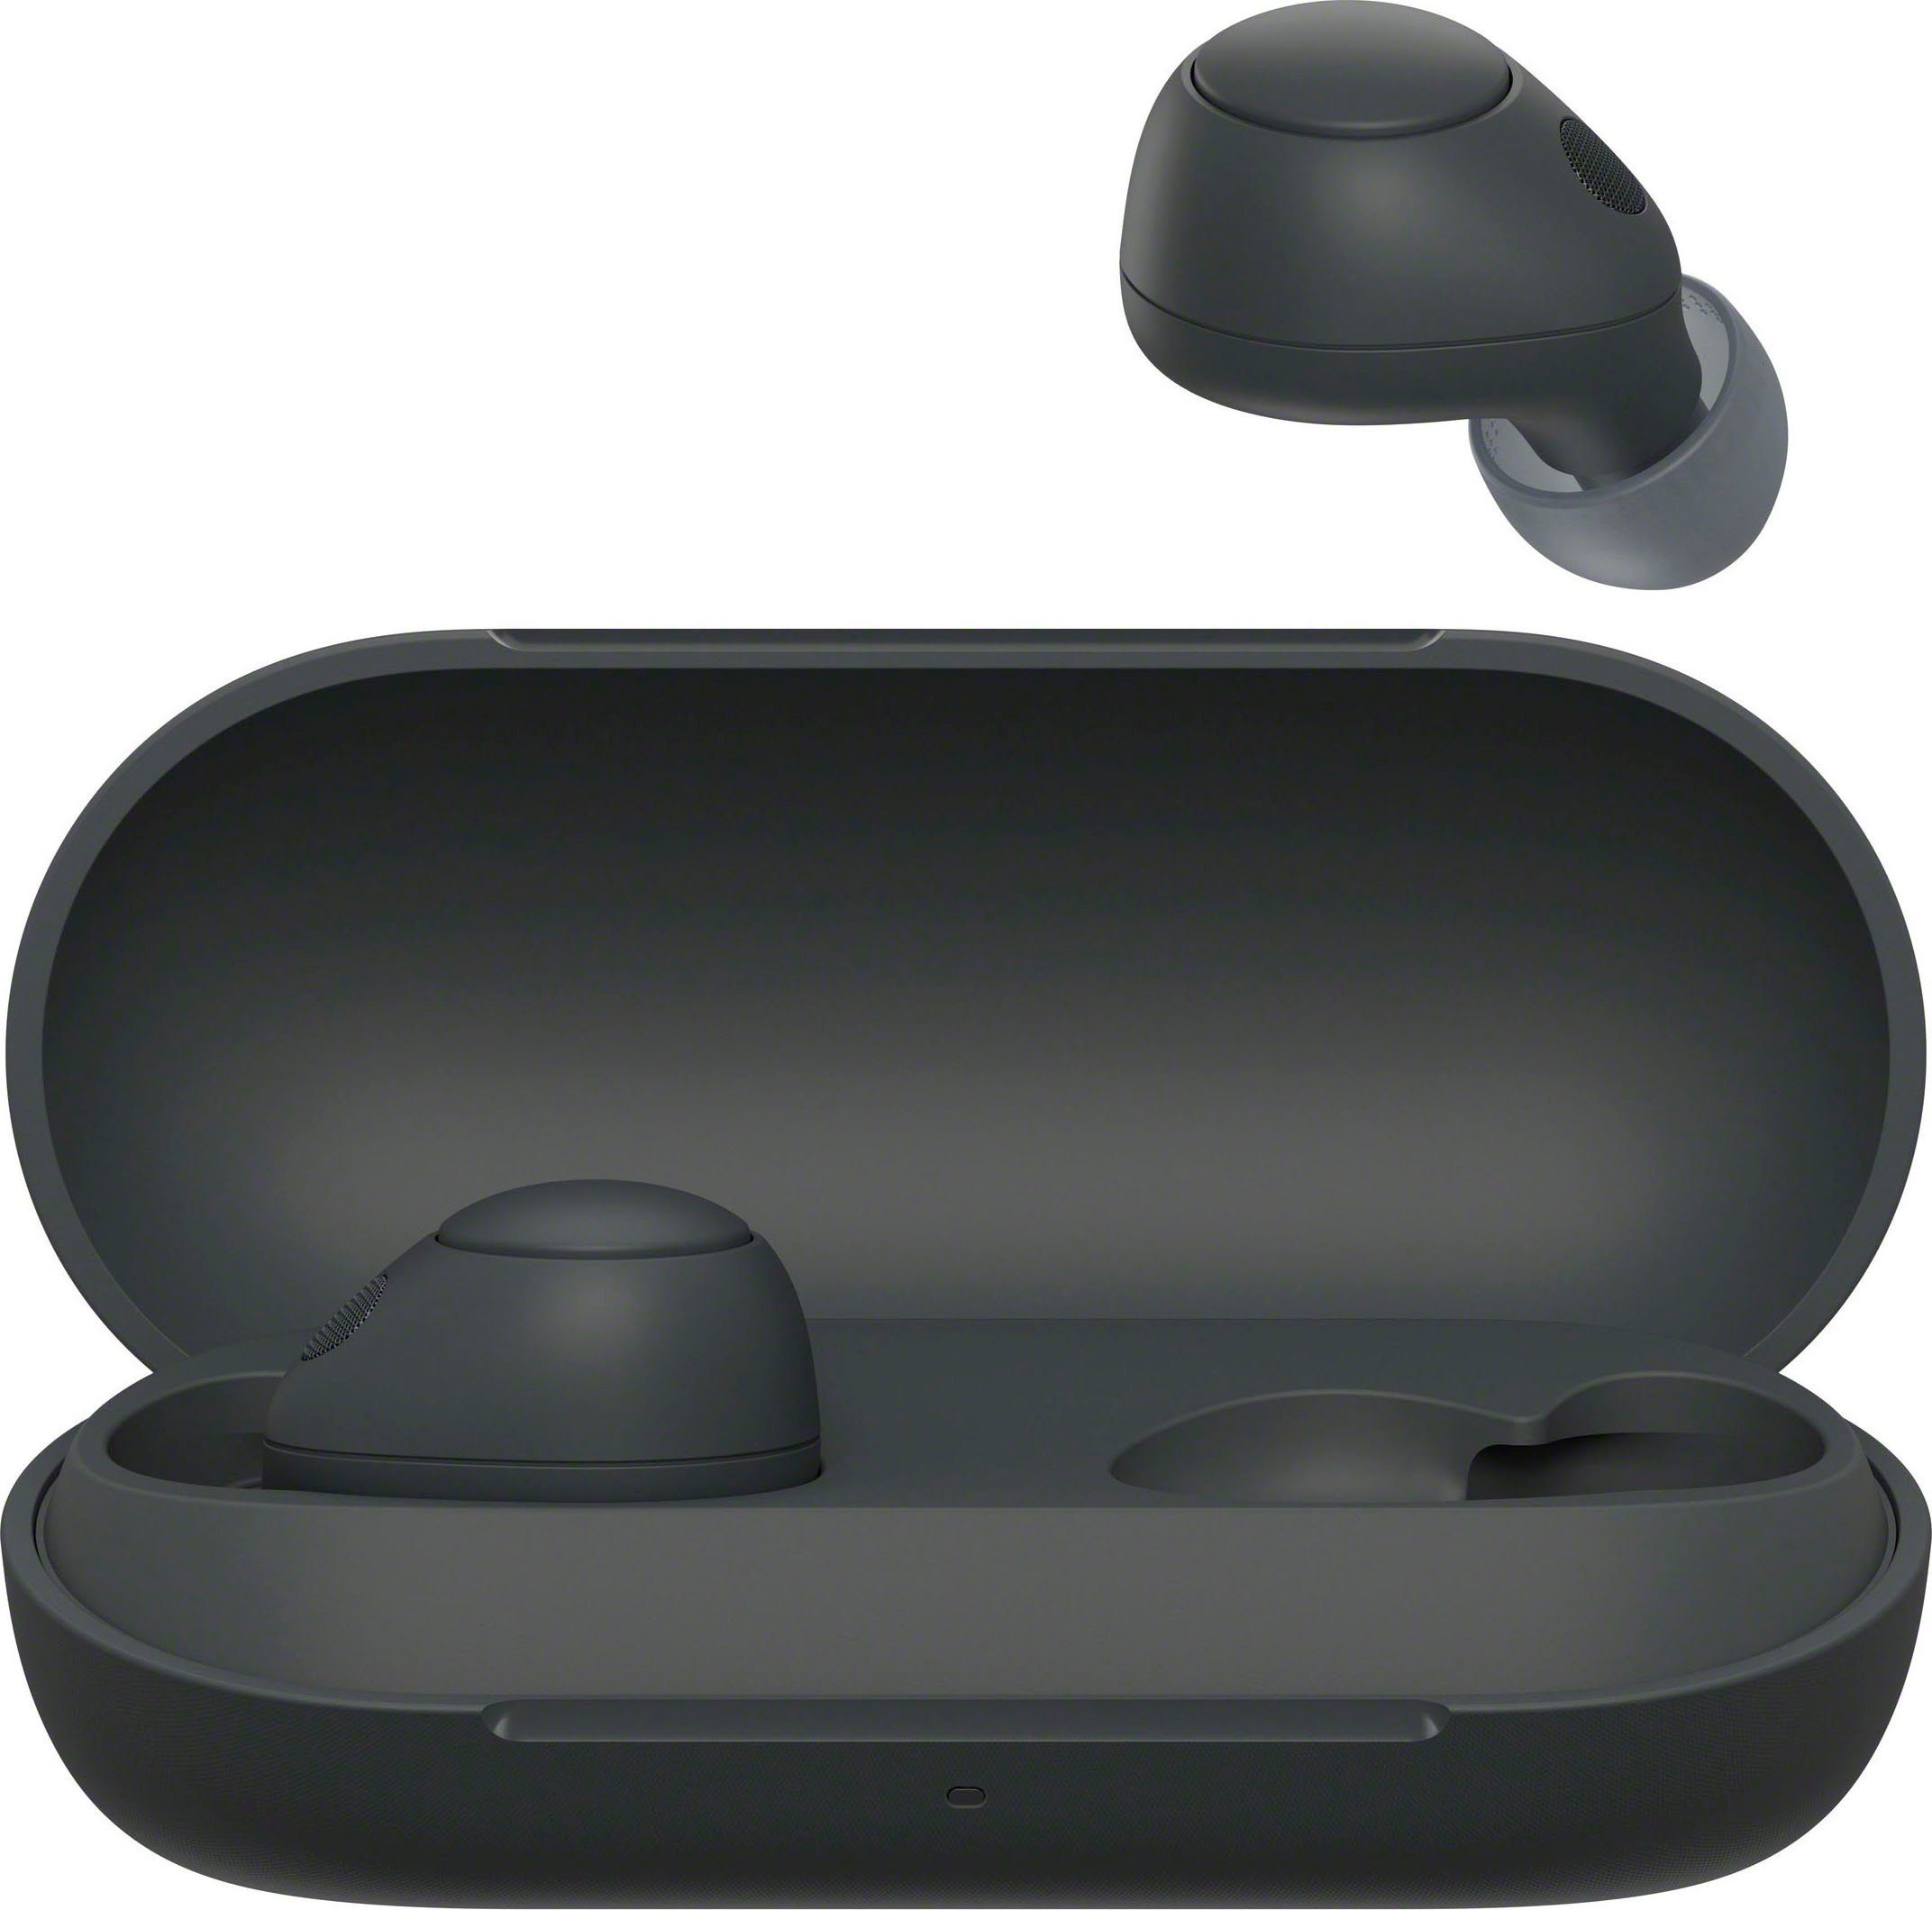 Gojischwarz WF-C700N bis Akkulaufzeit, Sony Bluetooth, 20 Std. (Noise-Cancelling, Multipoint In-Ear-Kopfhörer Connection)